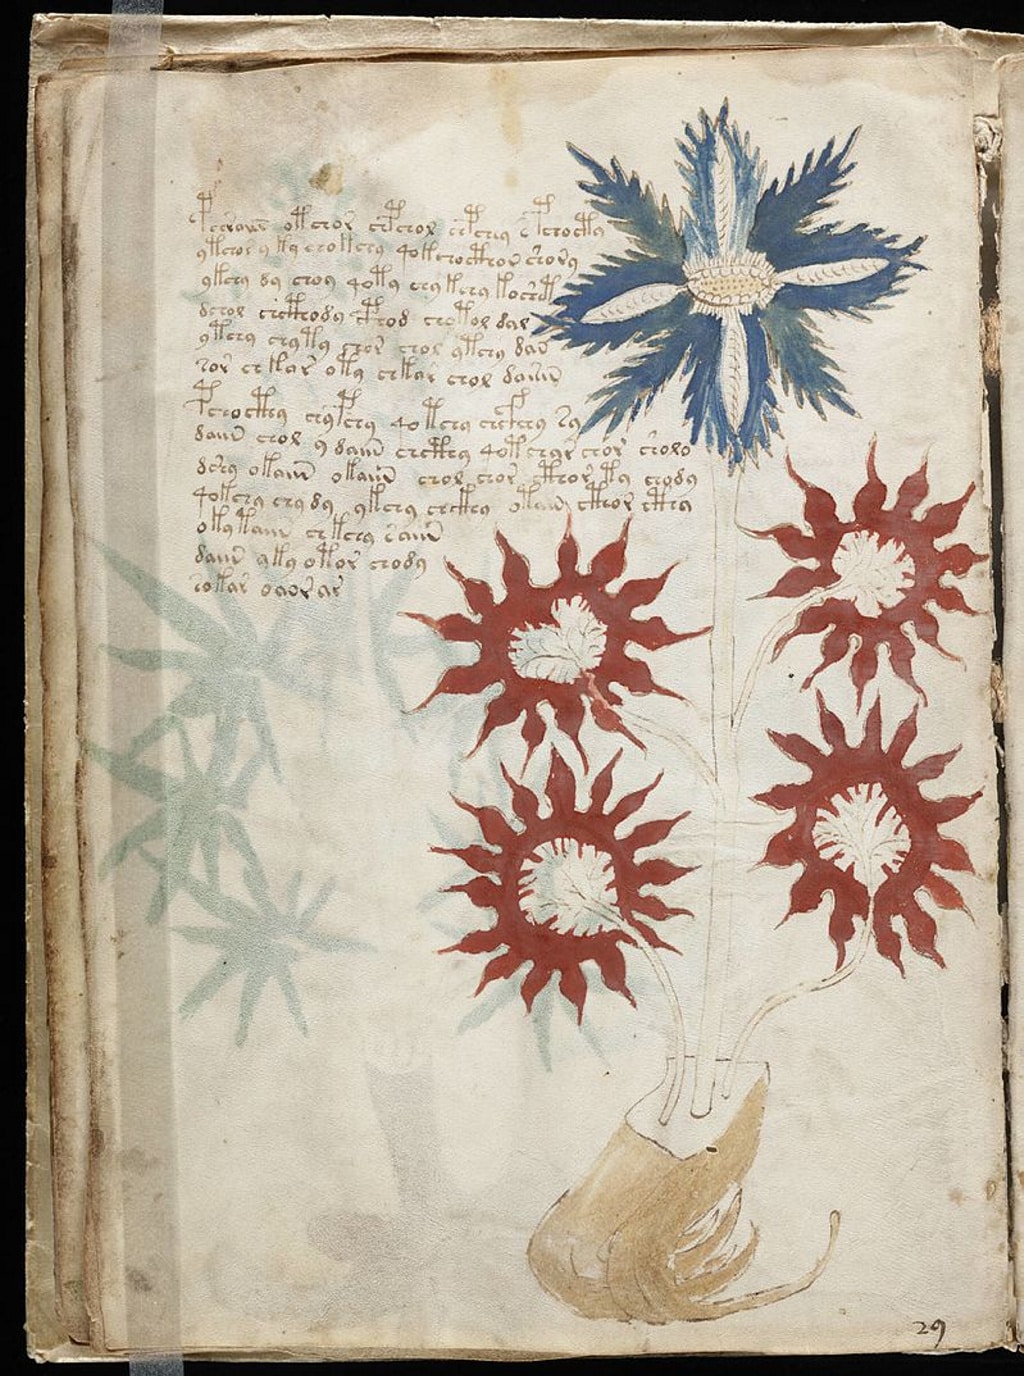 Dicen que han descifrado el libro más misterioso del mundo, el Manuscrito Voynich